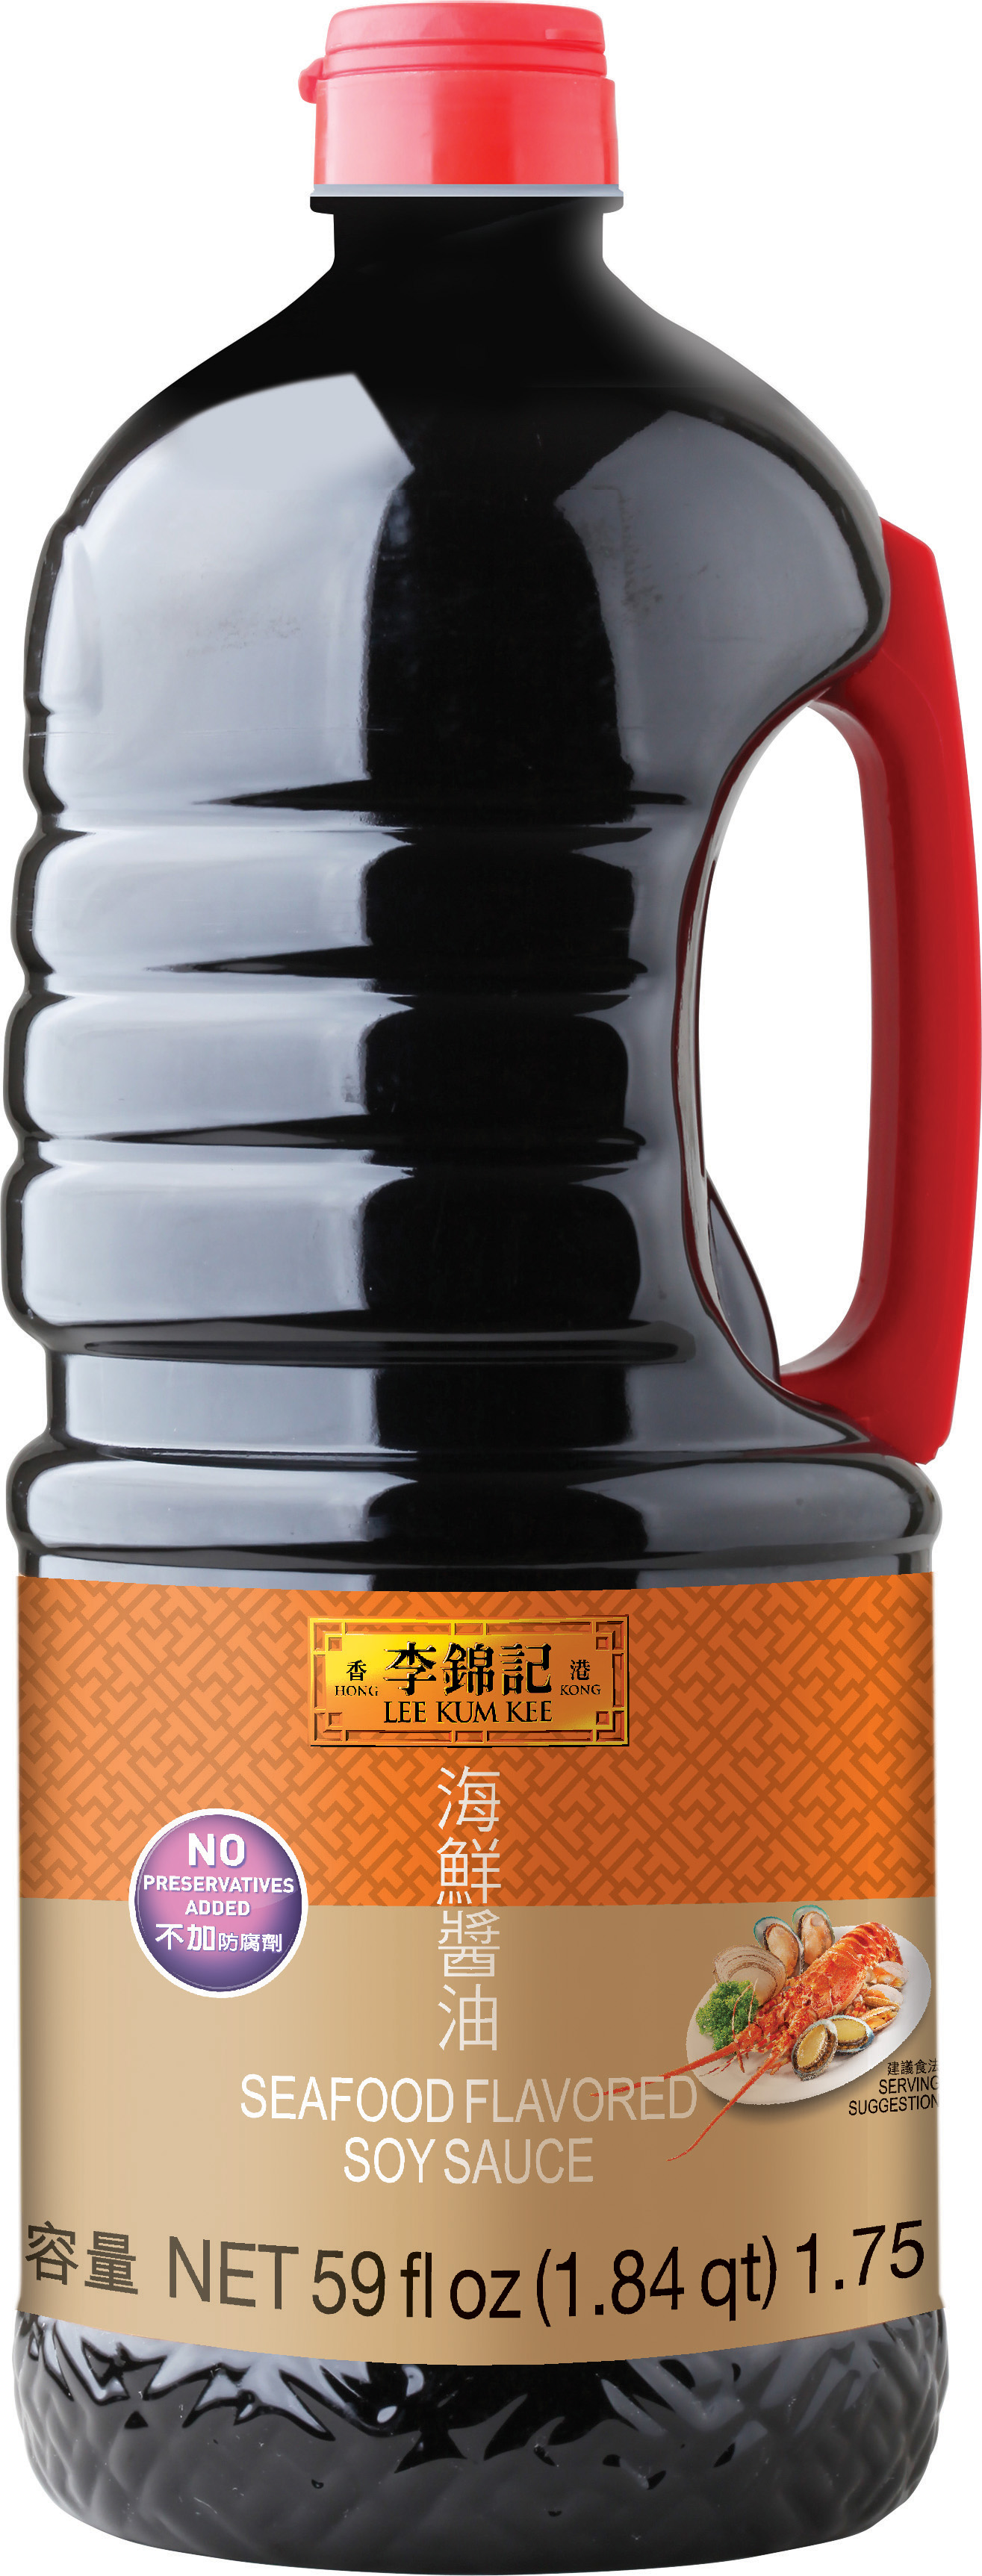 海鮮醬油, 59 fl oz (1.75 L), 瓶裝